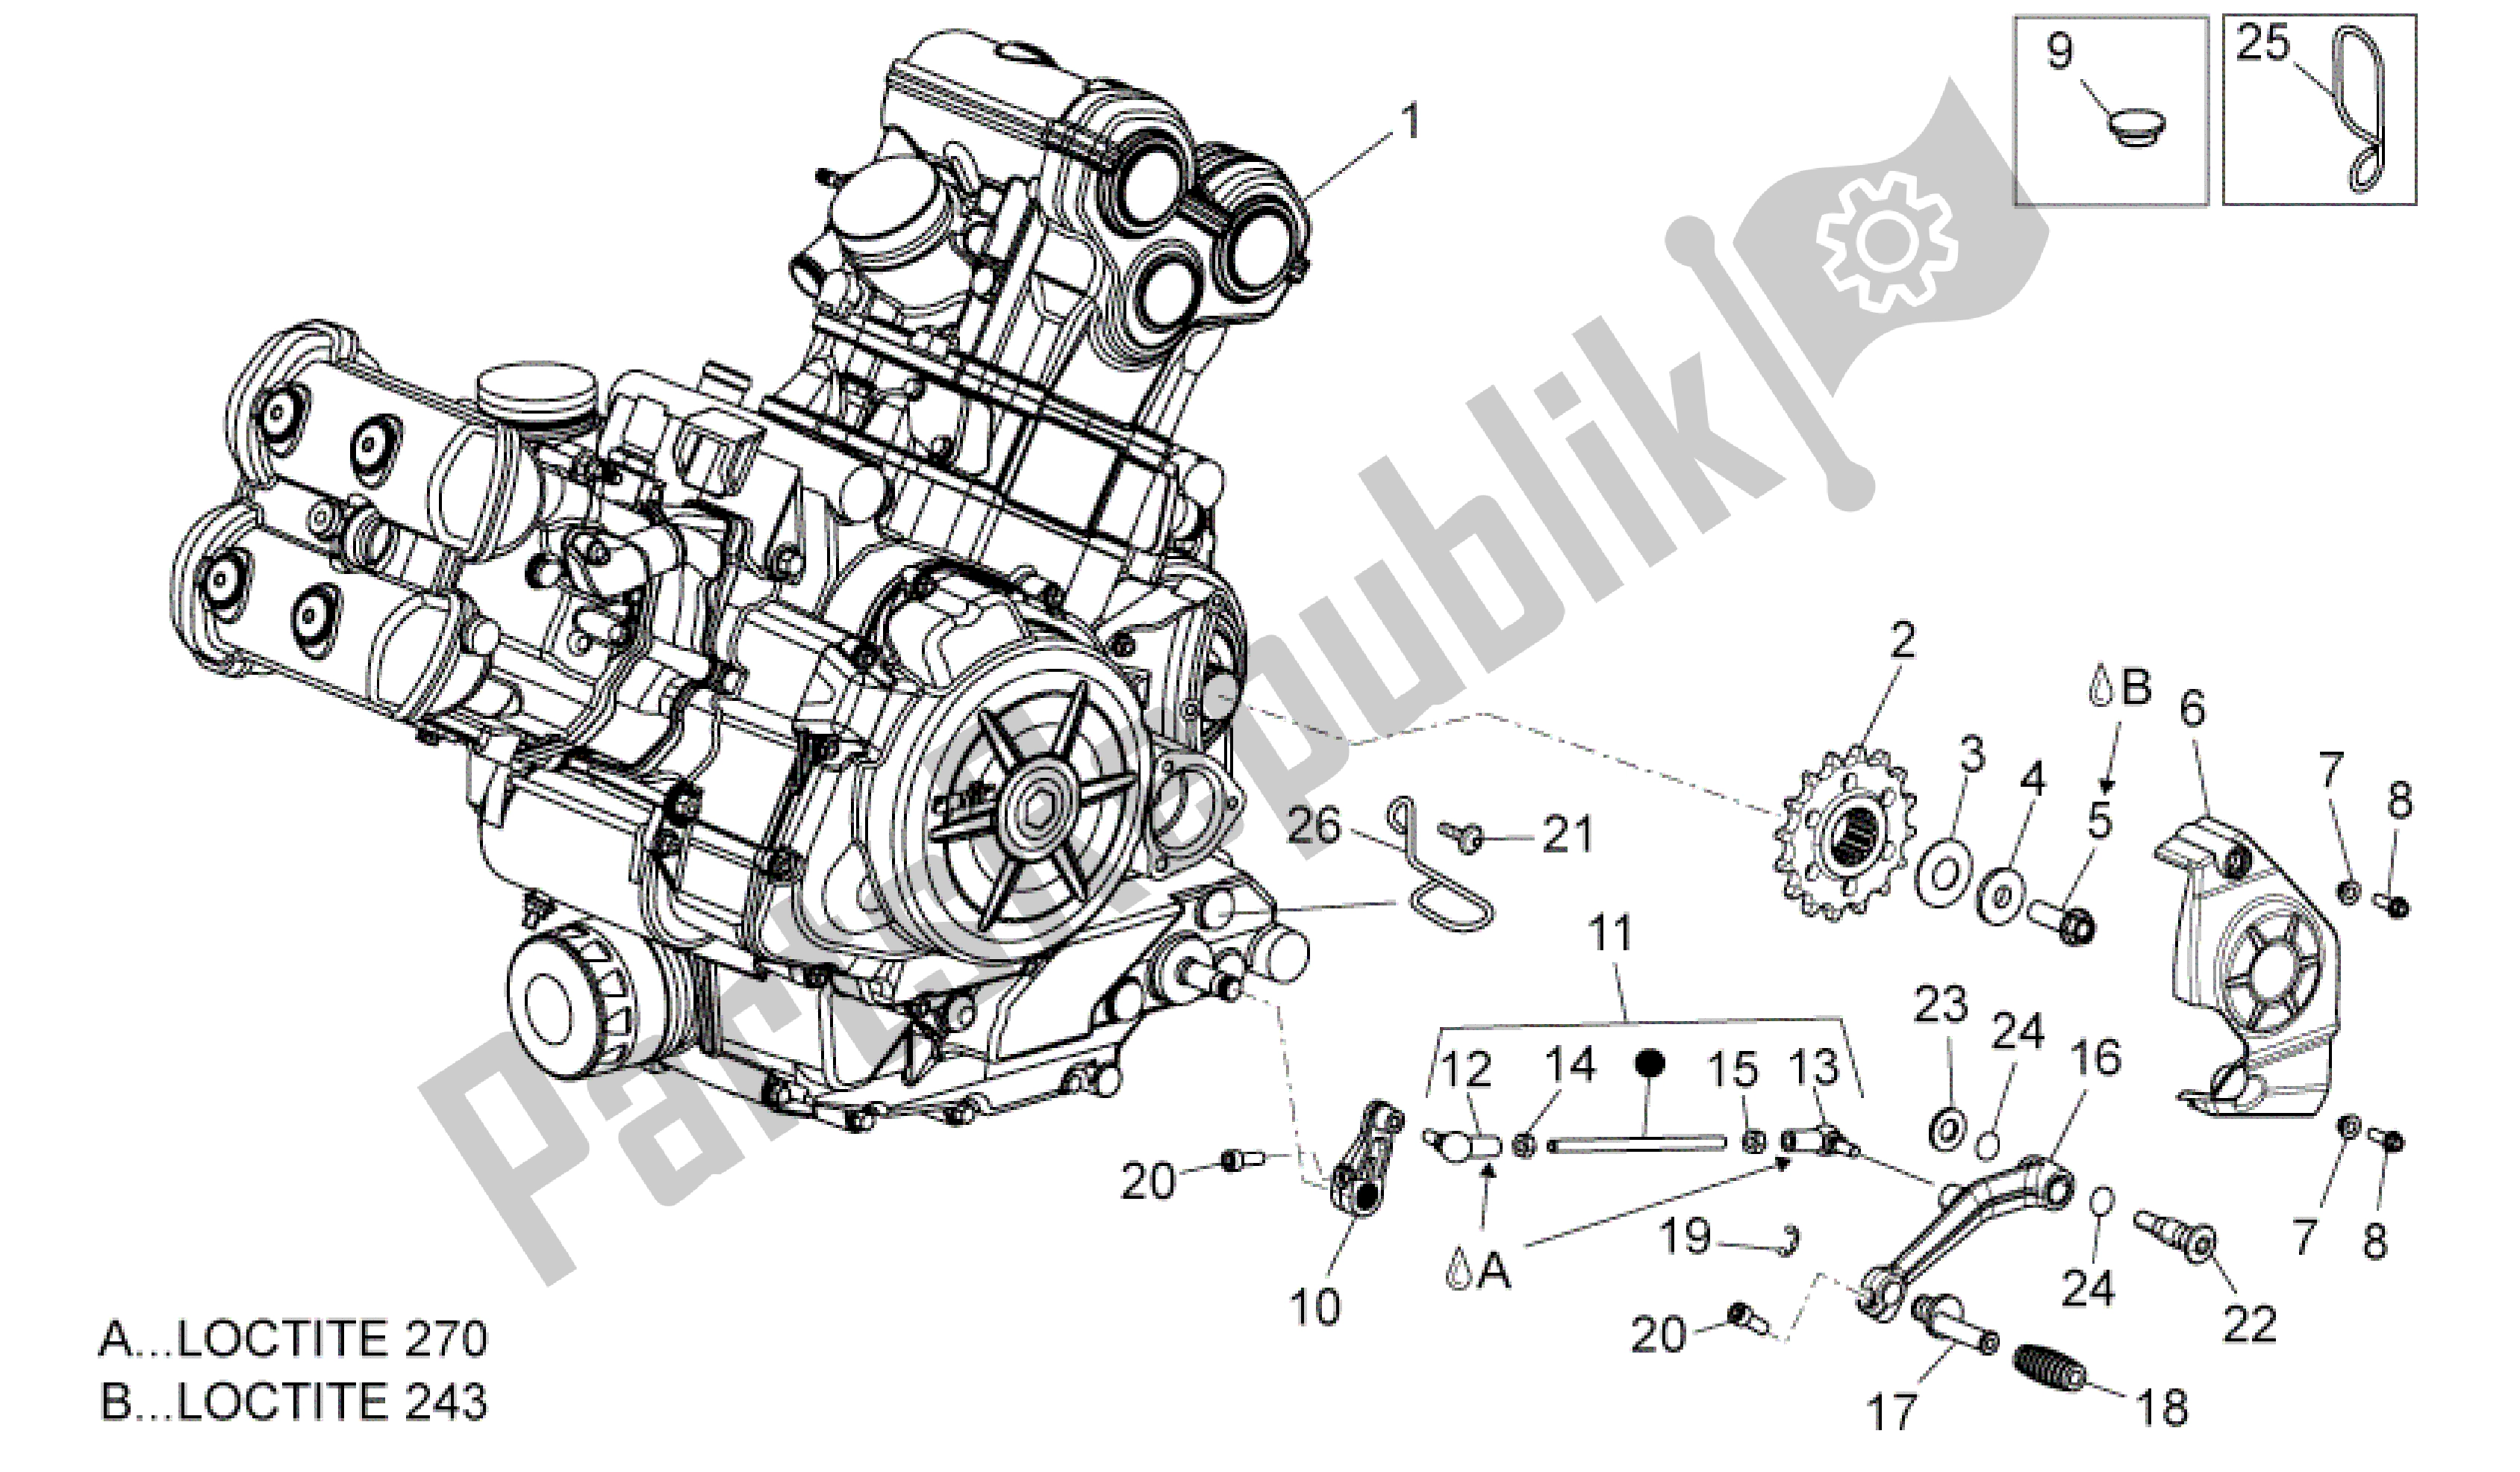 All parts for the Engine of the Aprilia Dorsoduro 1200 2010 - 2013